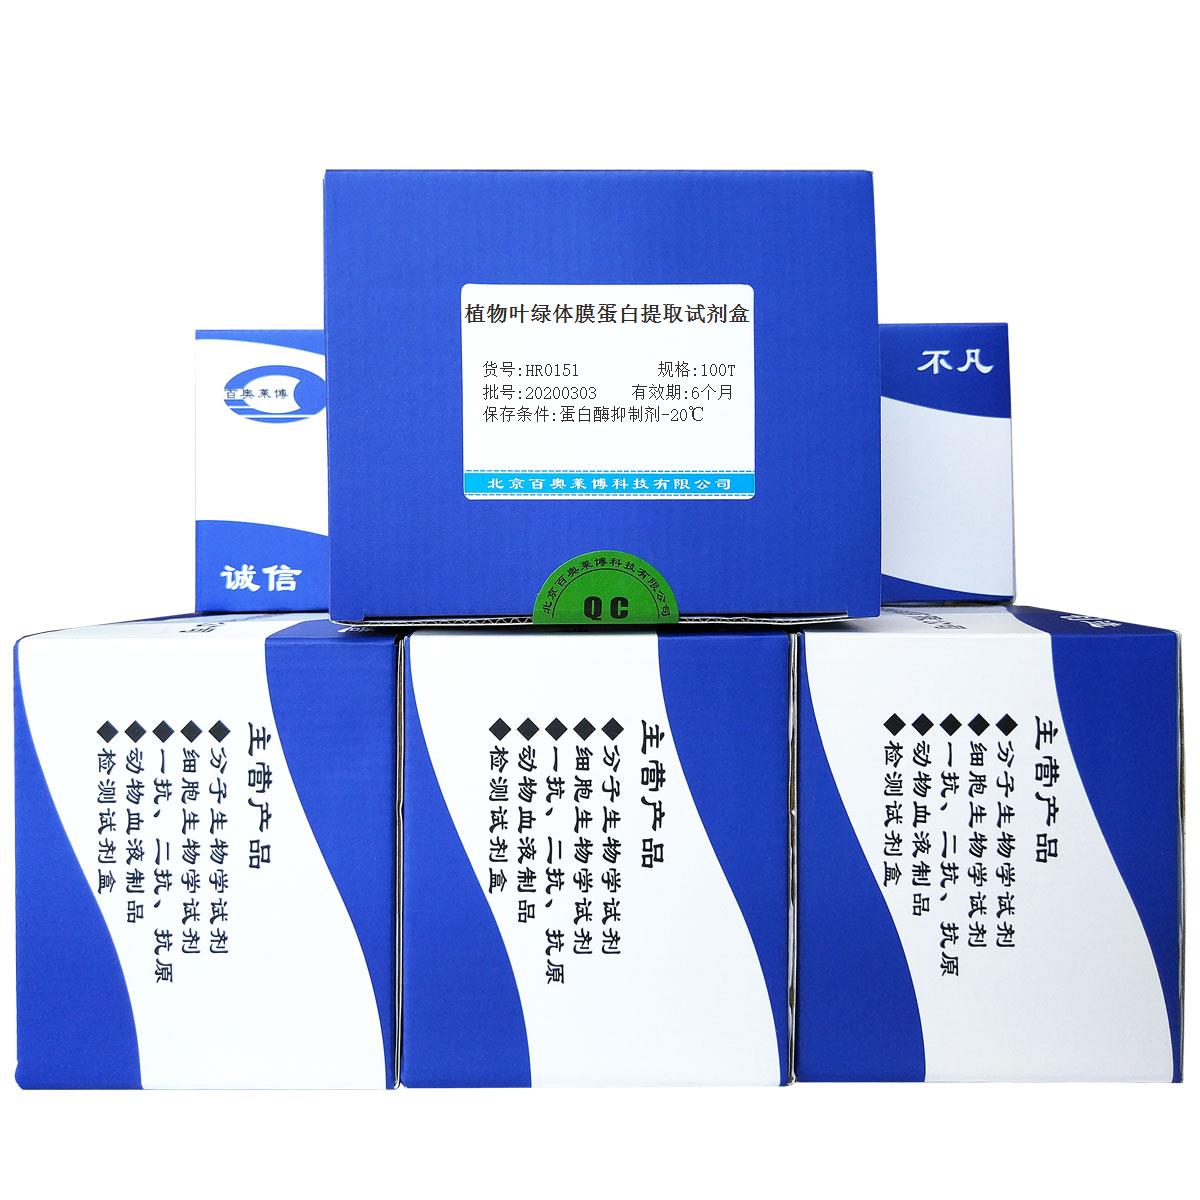 植物叶绿体膜蛋白提取试剂盒北京供应商